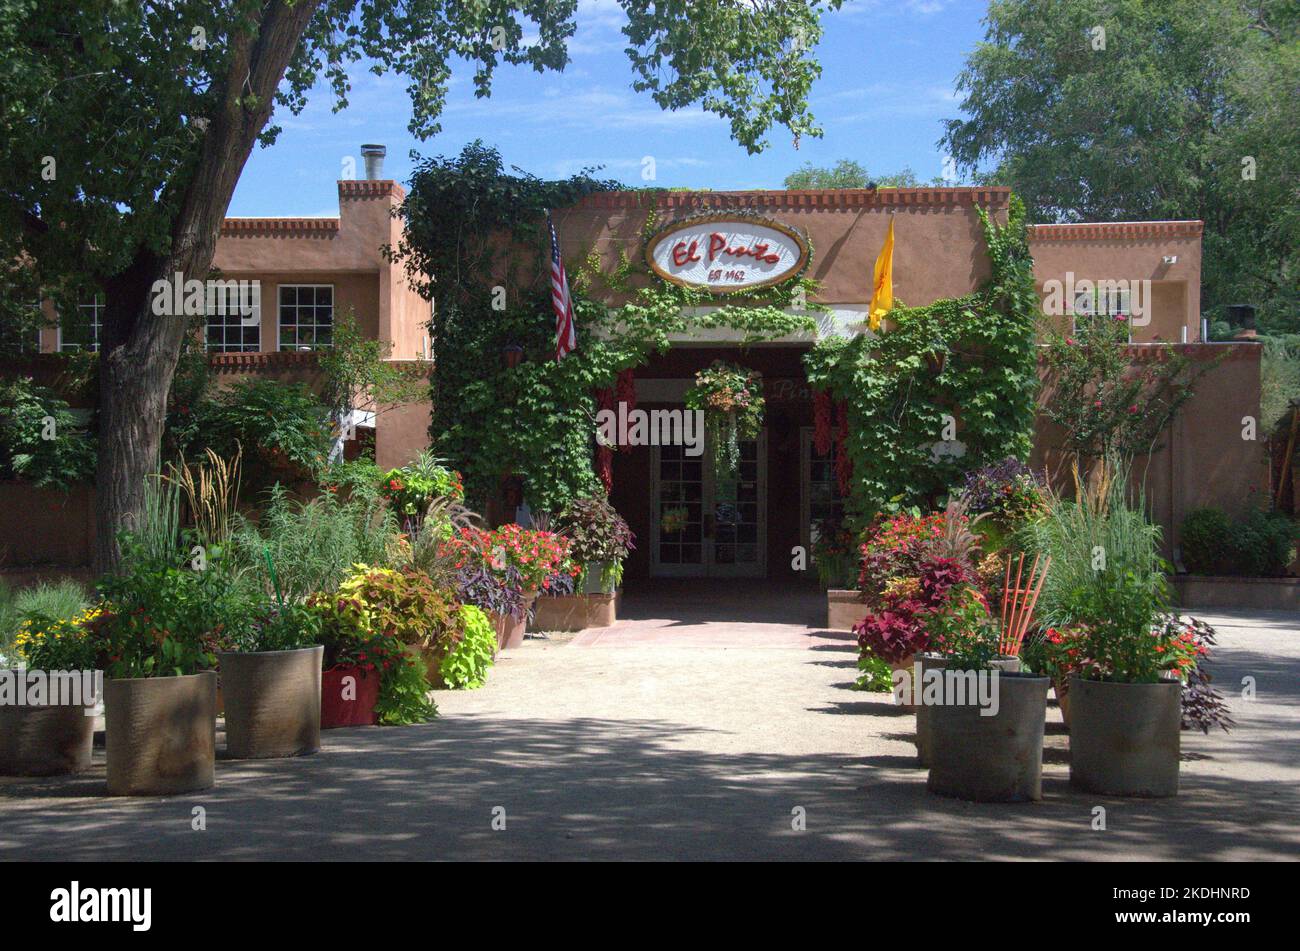 Famoso restaurante El Pinto en Albuquerque, Nuevo México Foto de stock